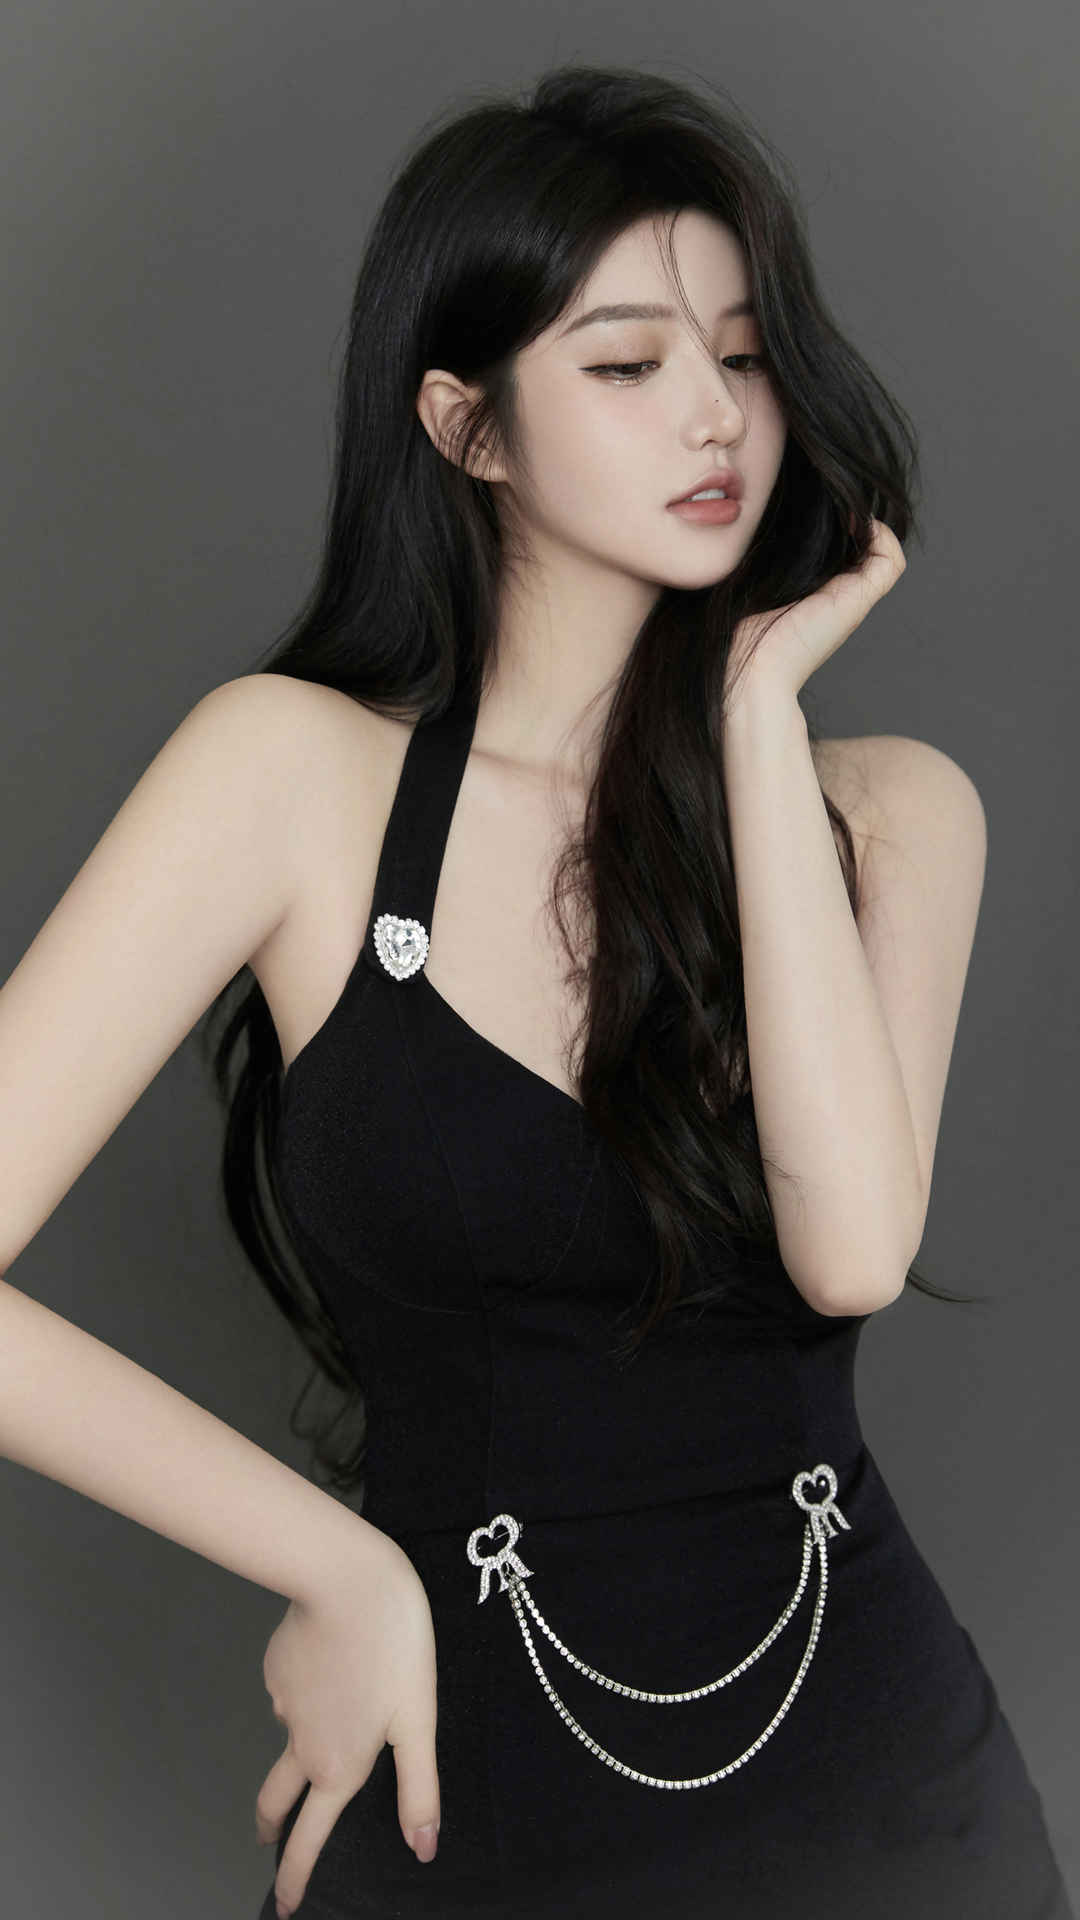 Nanki 黑色裙子时尚好身材4k手机壁纸美女